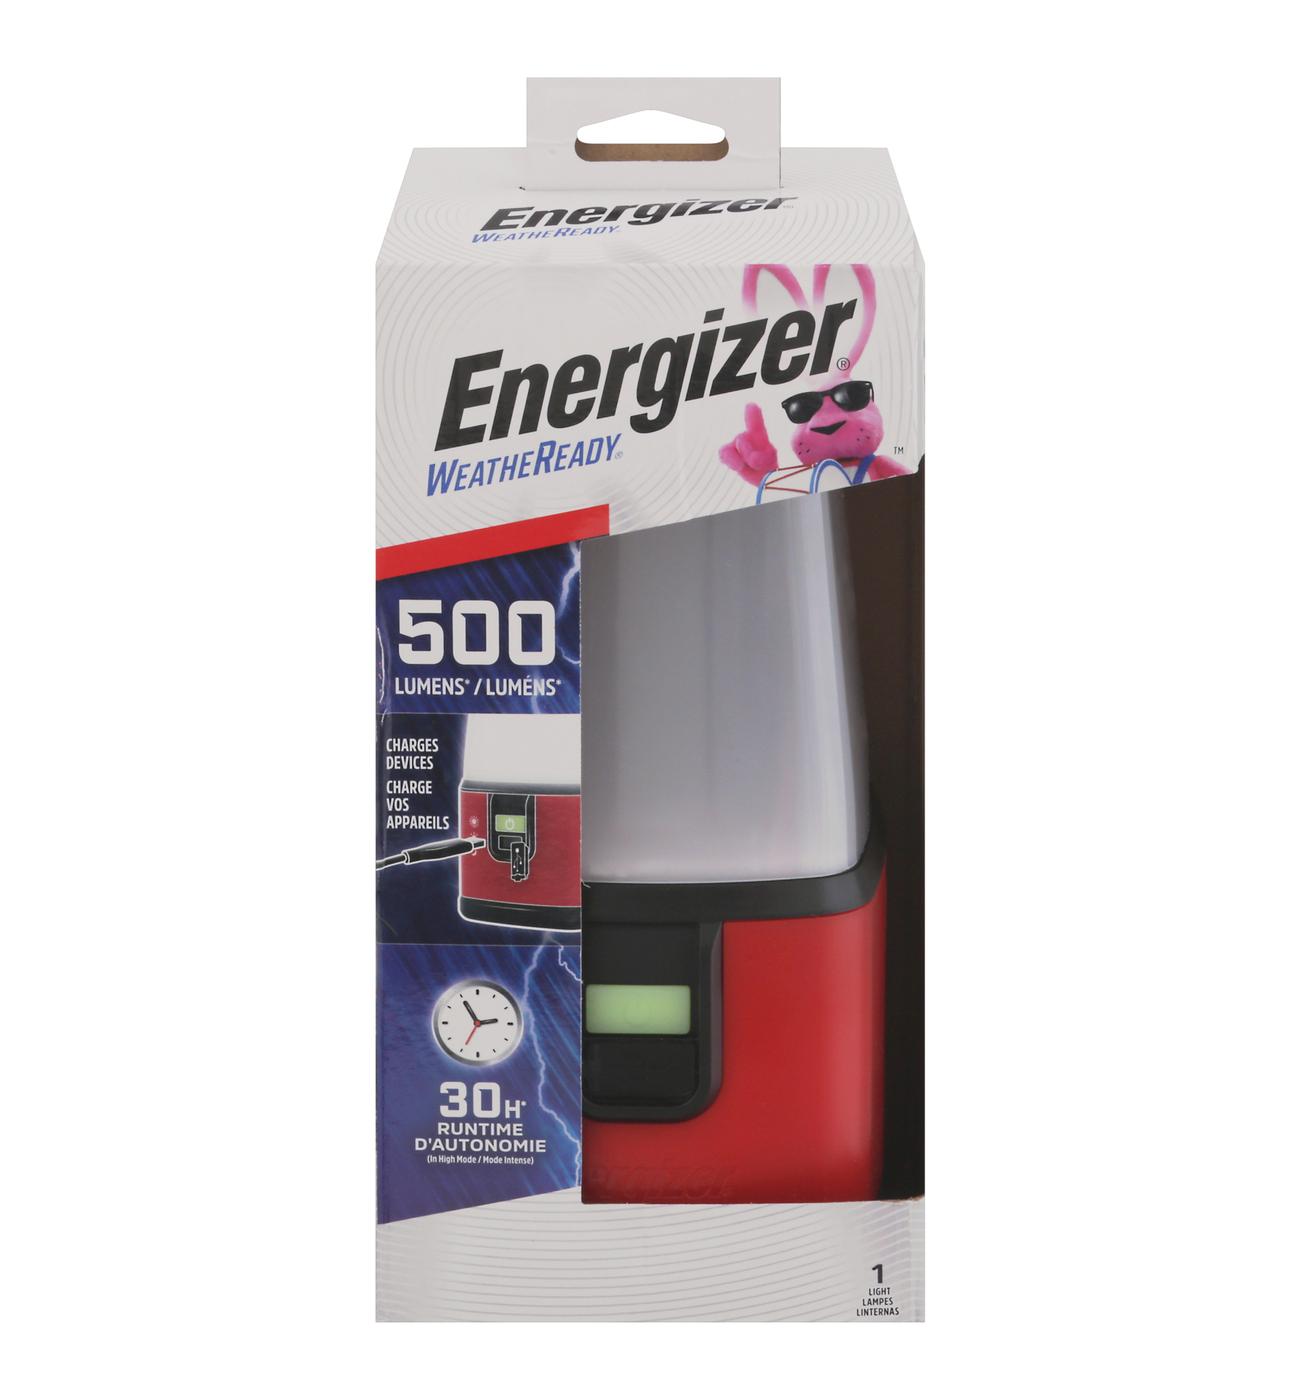 Energizer Weatheready Emergency Area Light; image 1 of 4